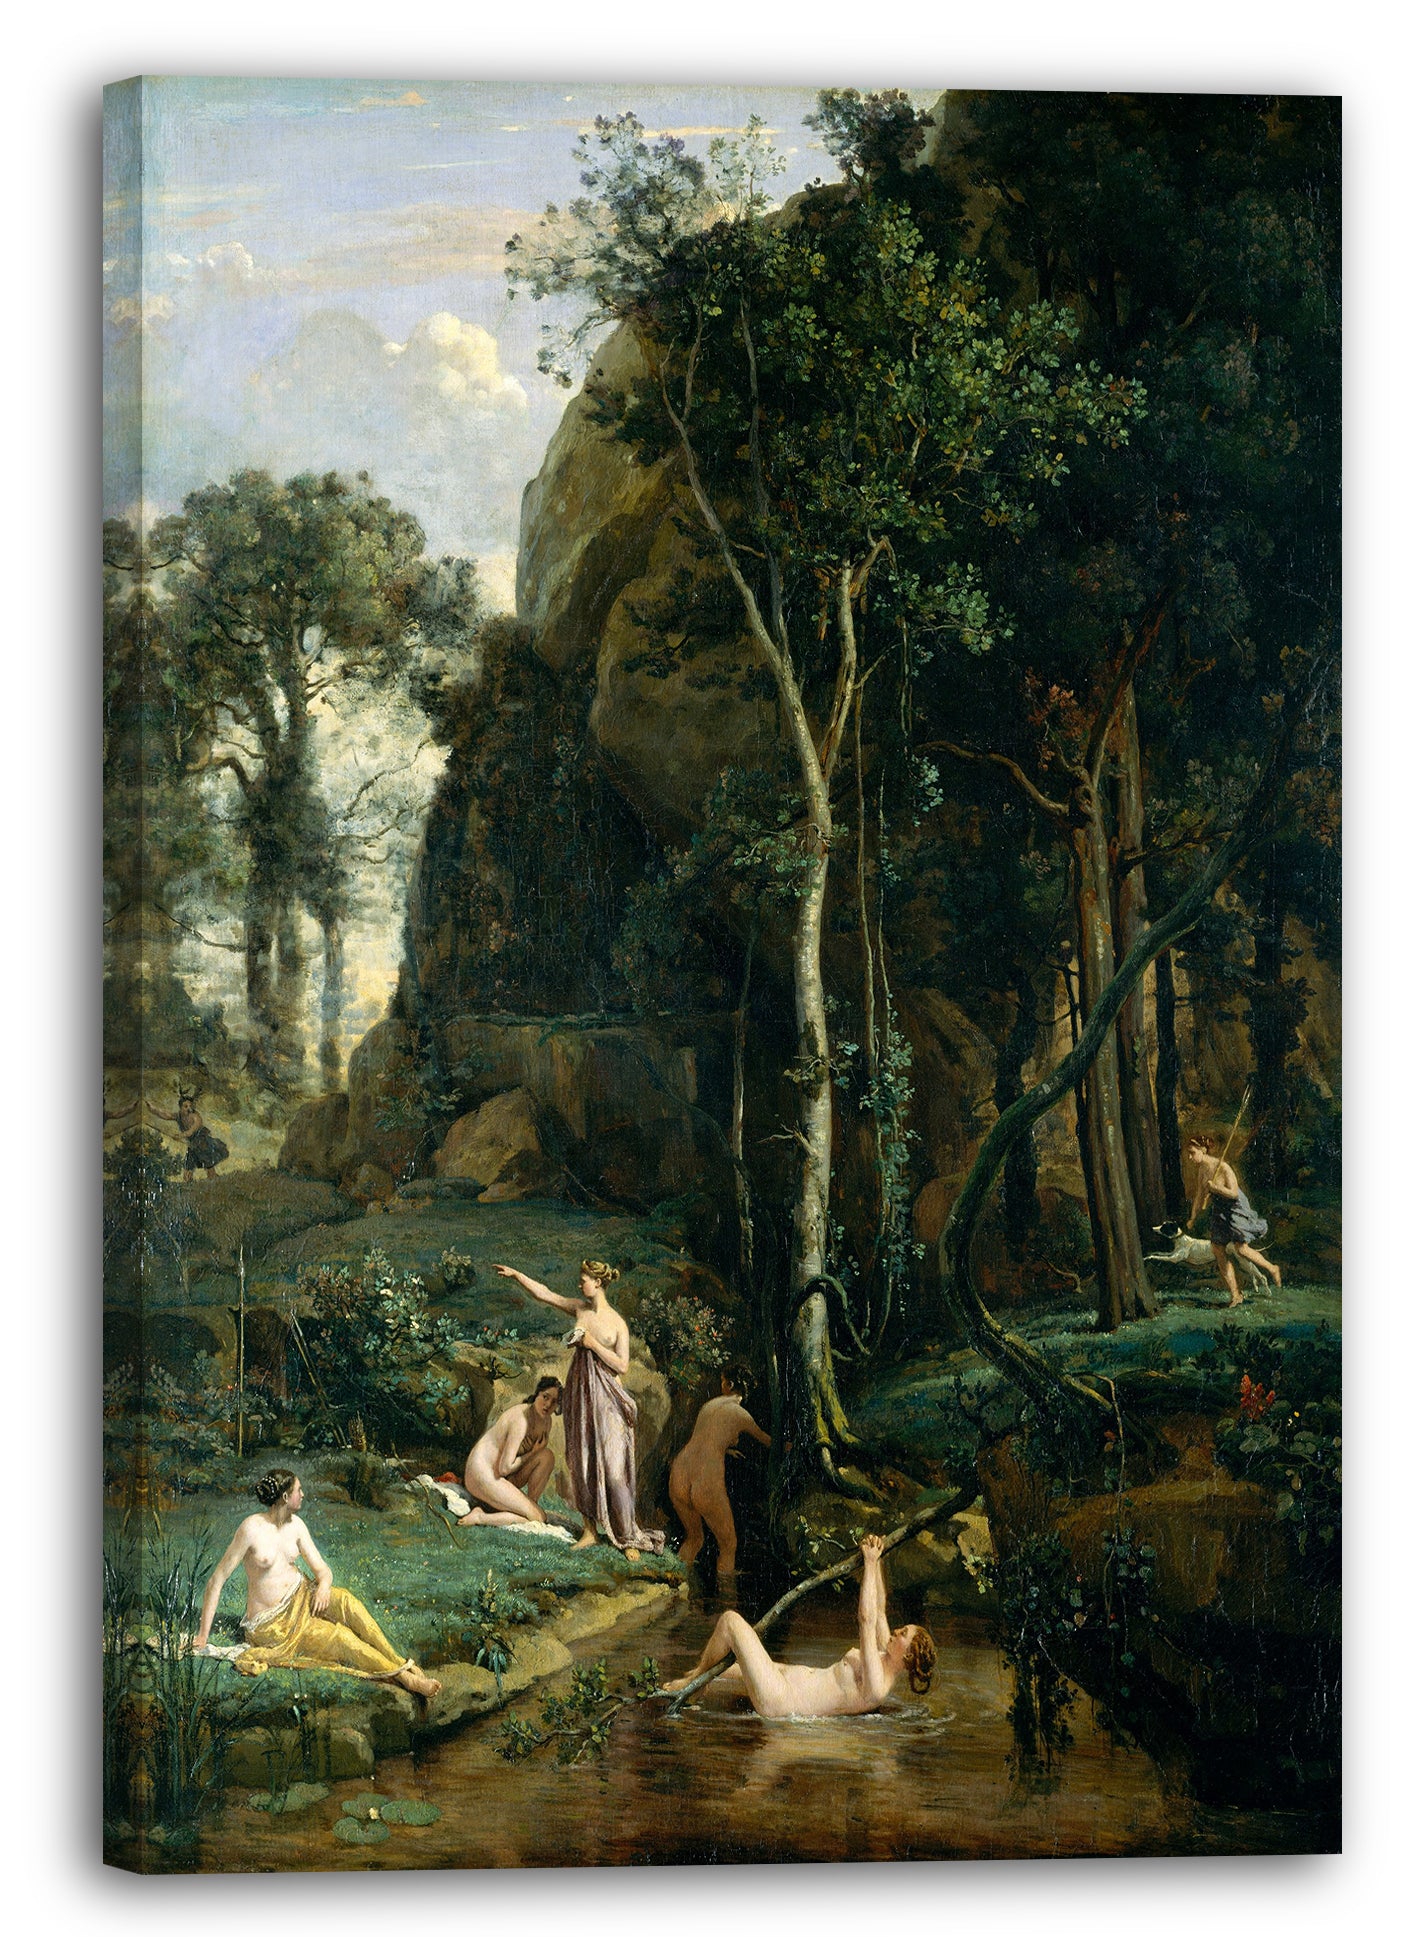 Leinwandbild Camille Corot - Diana und Actaeon (Diana überrascht in ihrem Bad)